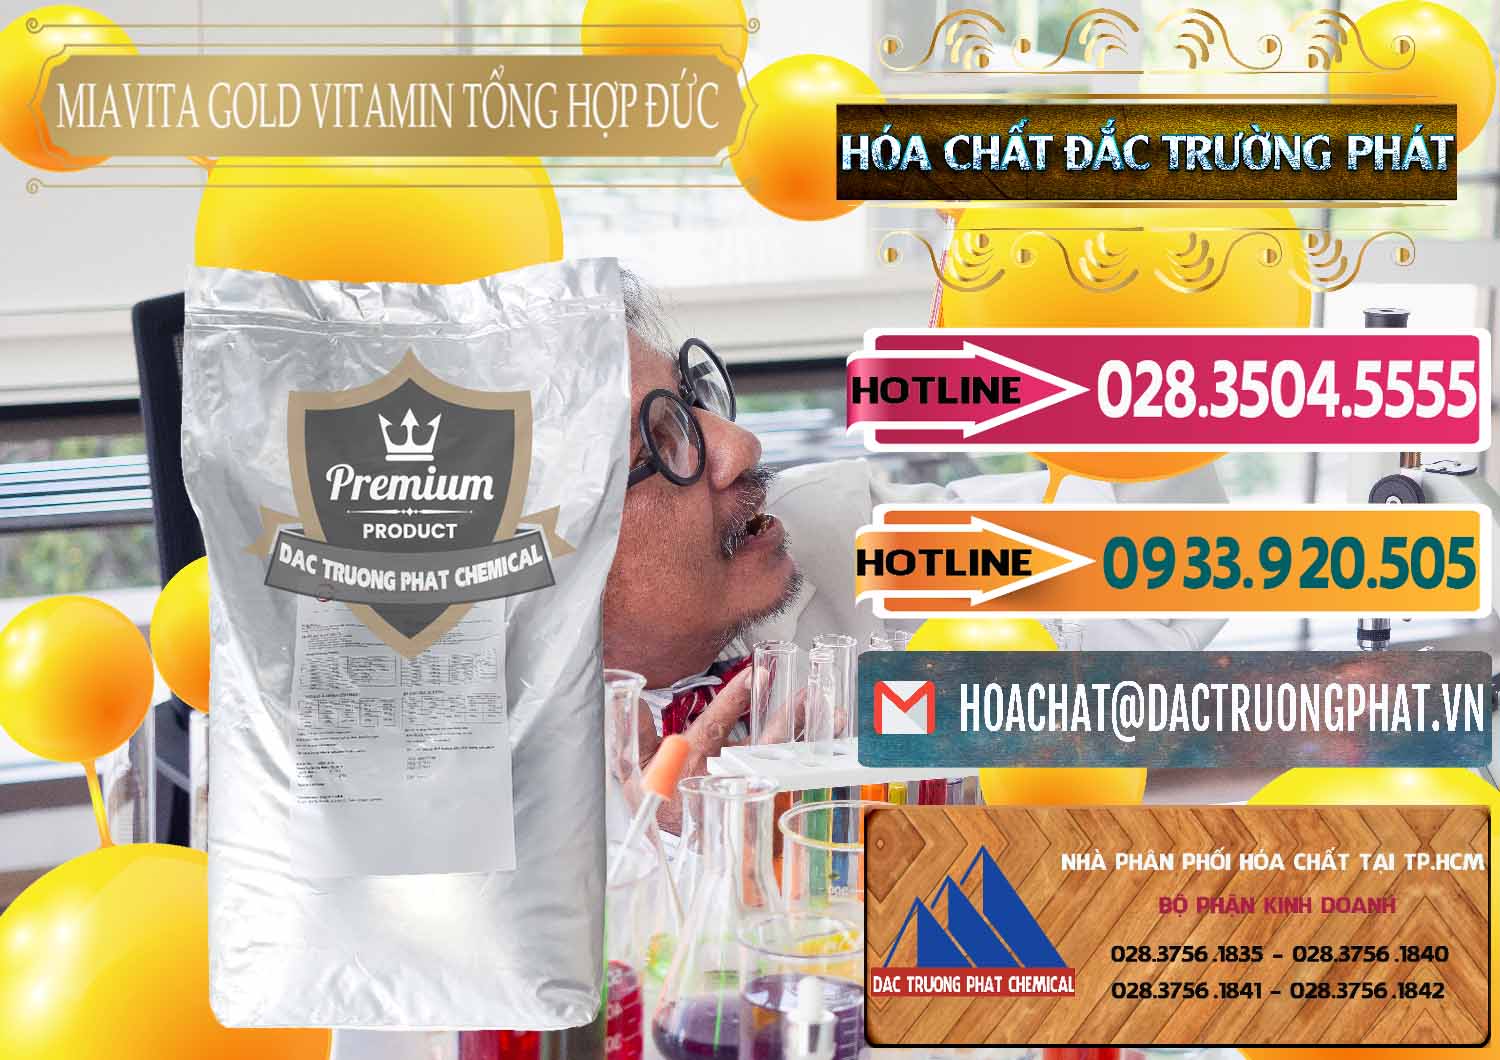 Đơn vị chuyên cung cấp và bán Vitamin Tổng Hợp Miavita Gold Đức Germany - 0307 - Cung cấp - kinh doanh hóa chất tại TP.HCM - dactruongphat.vn